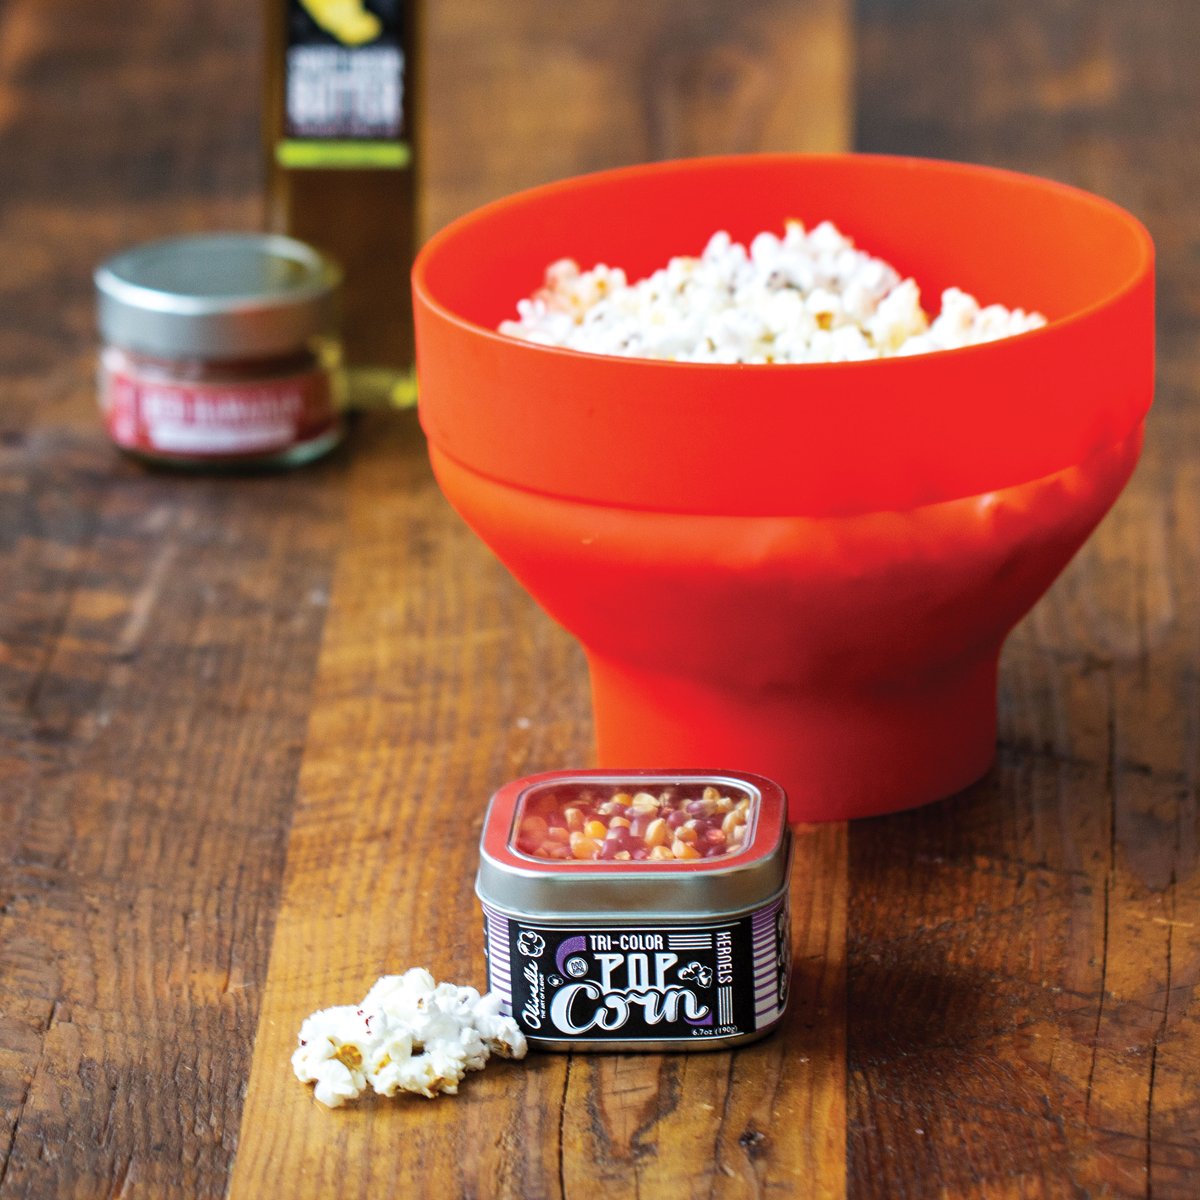 Lukue Microwave Popcorn Popper – Copper Moose Oil & Vinegar